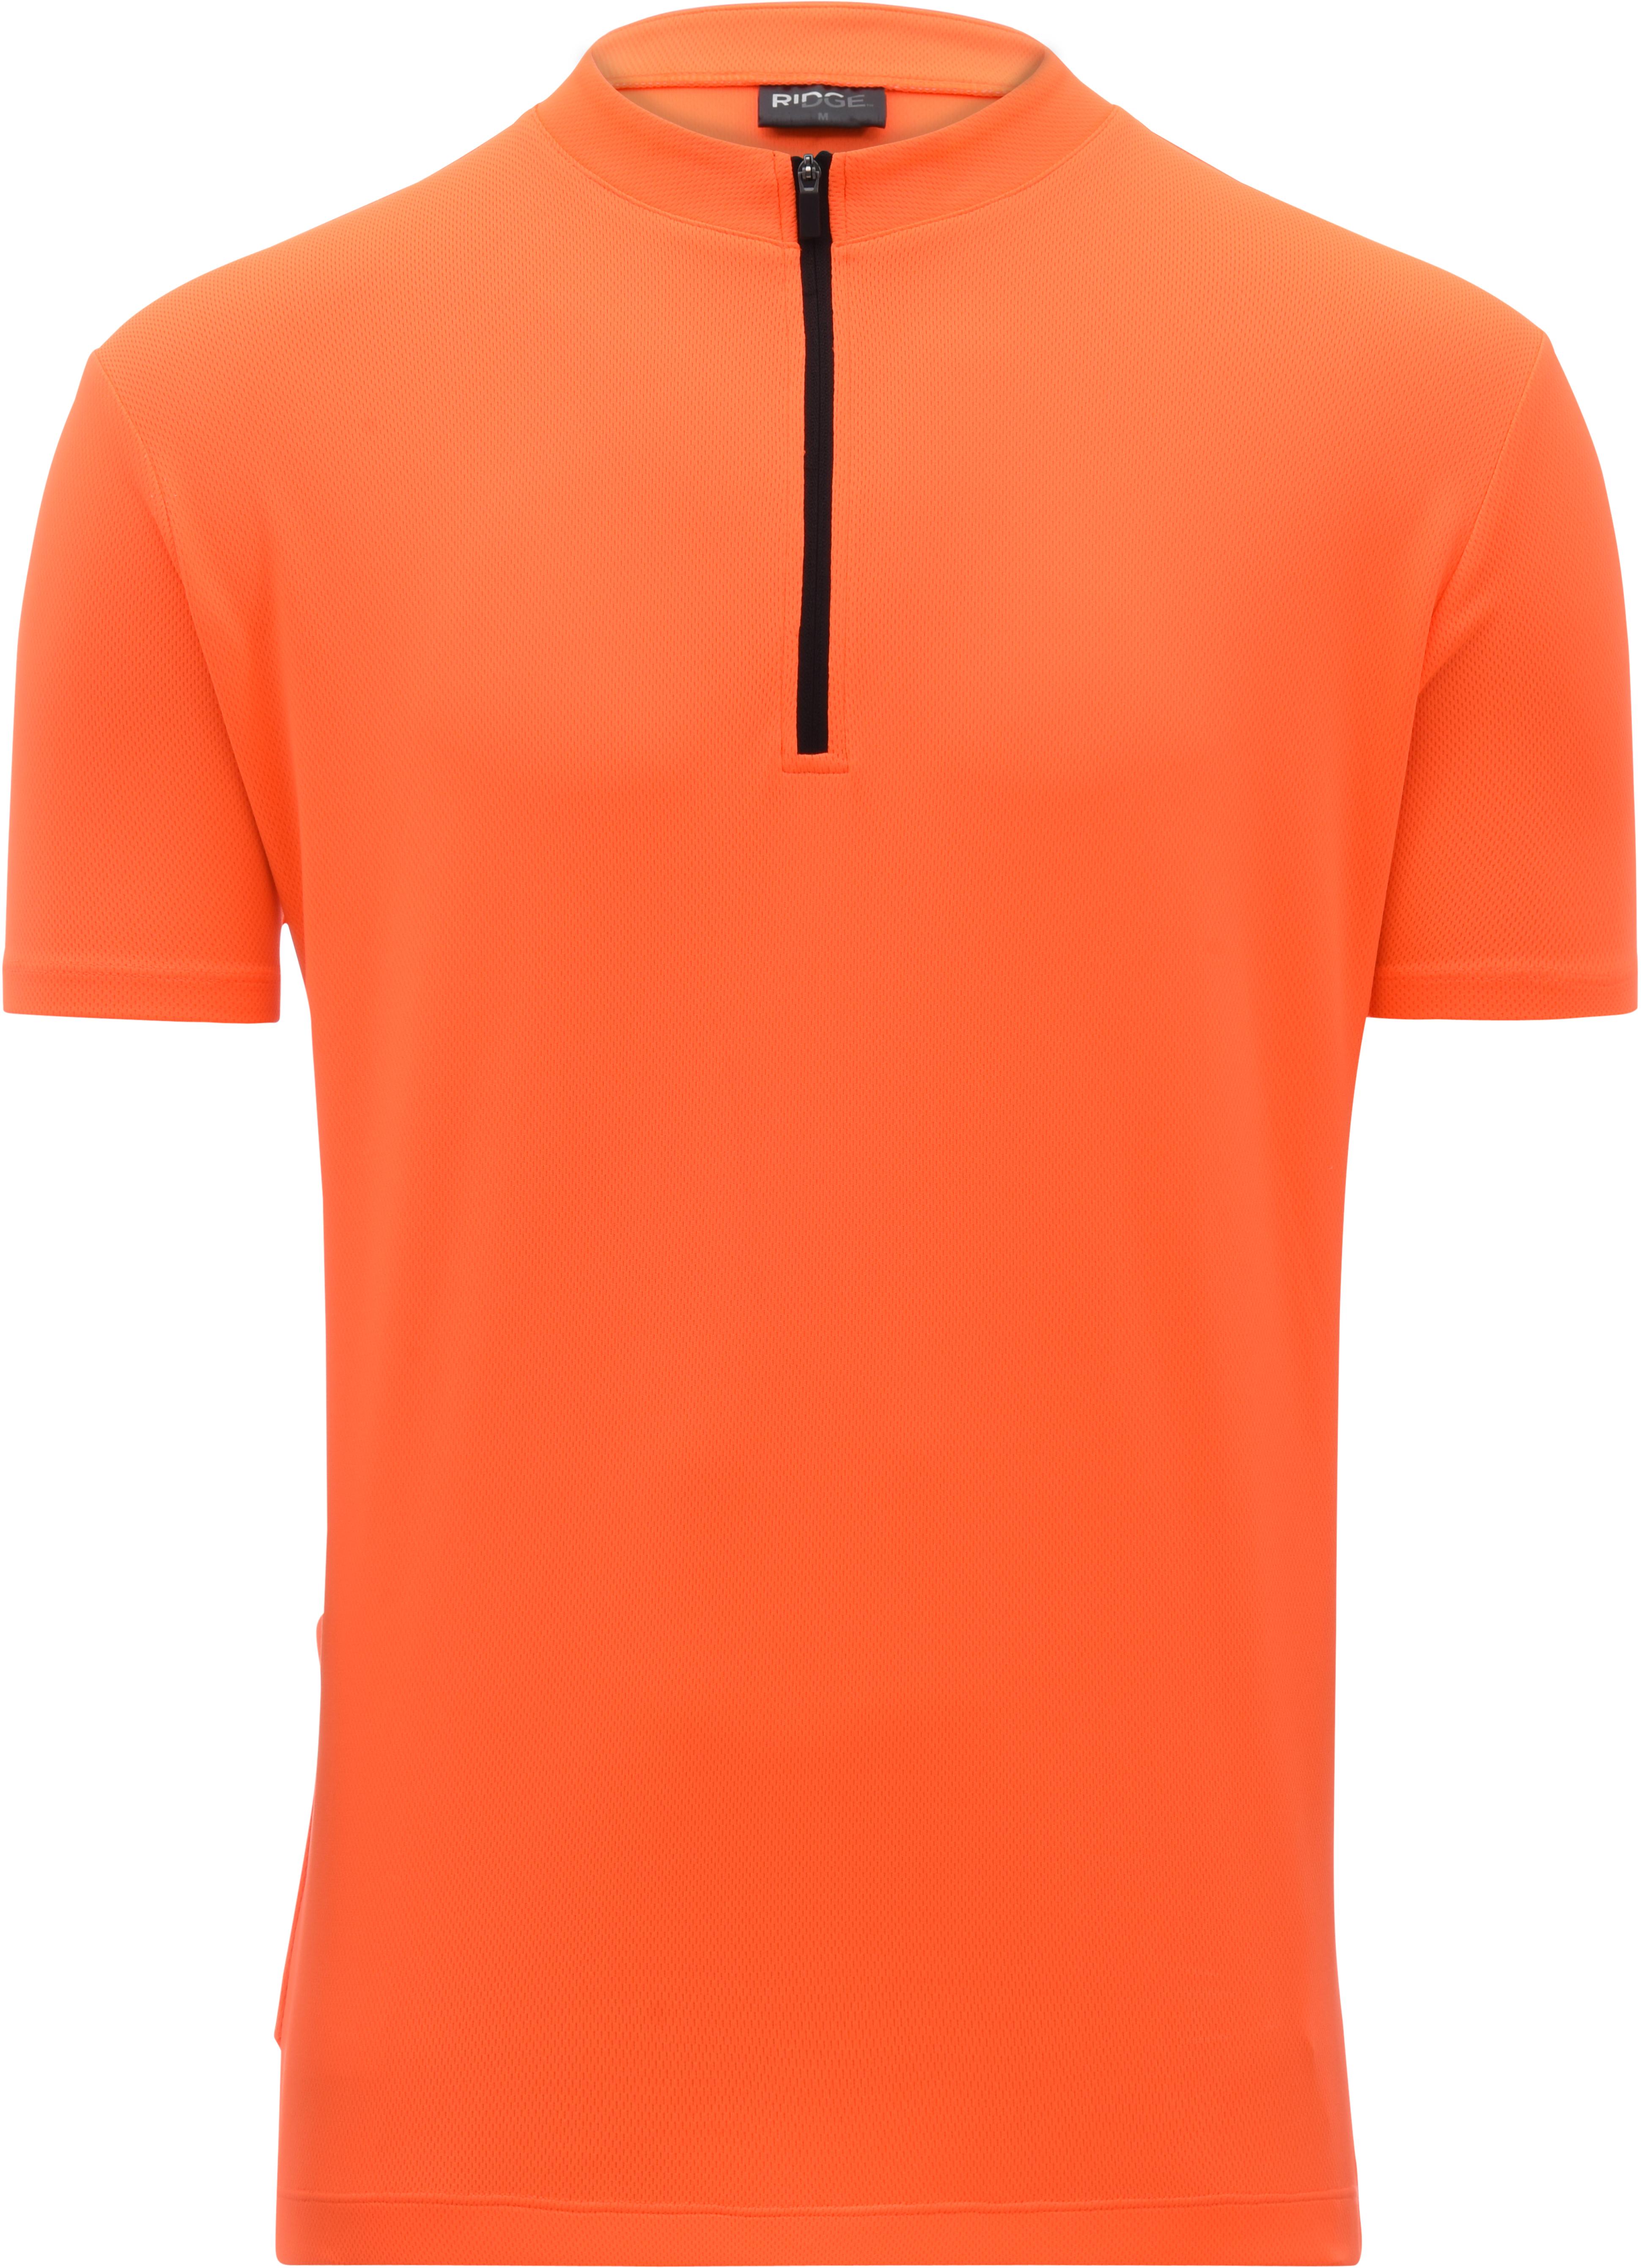 Ridge Mens Cycling Jersey - Orange Large